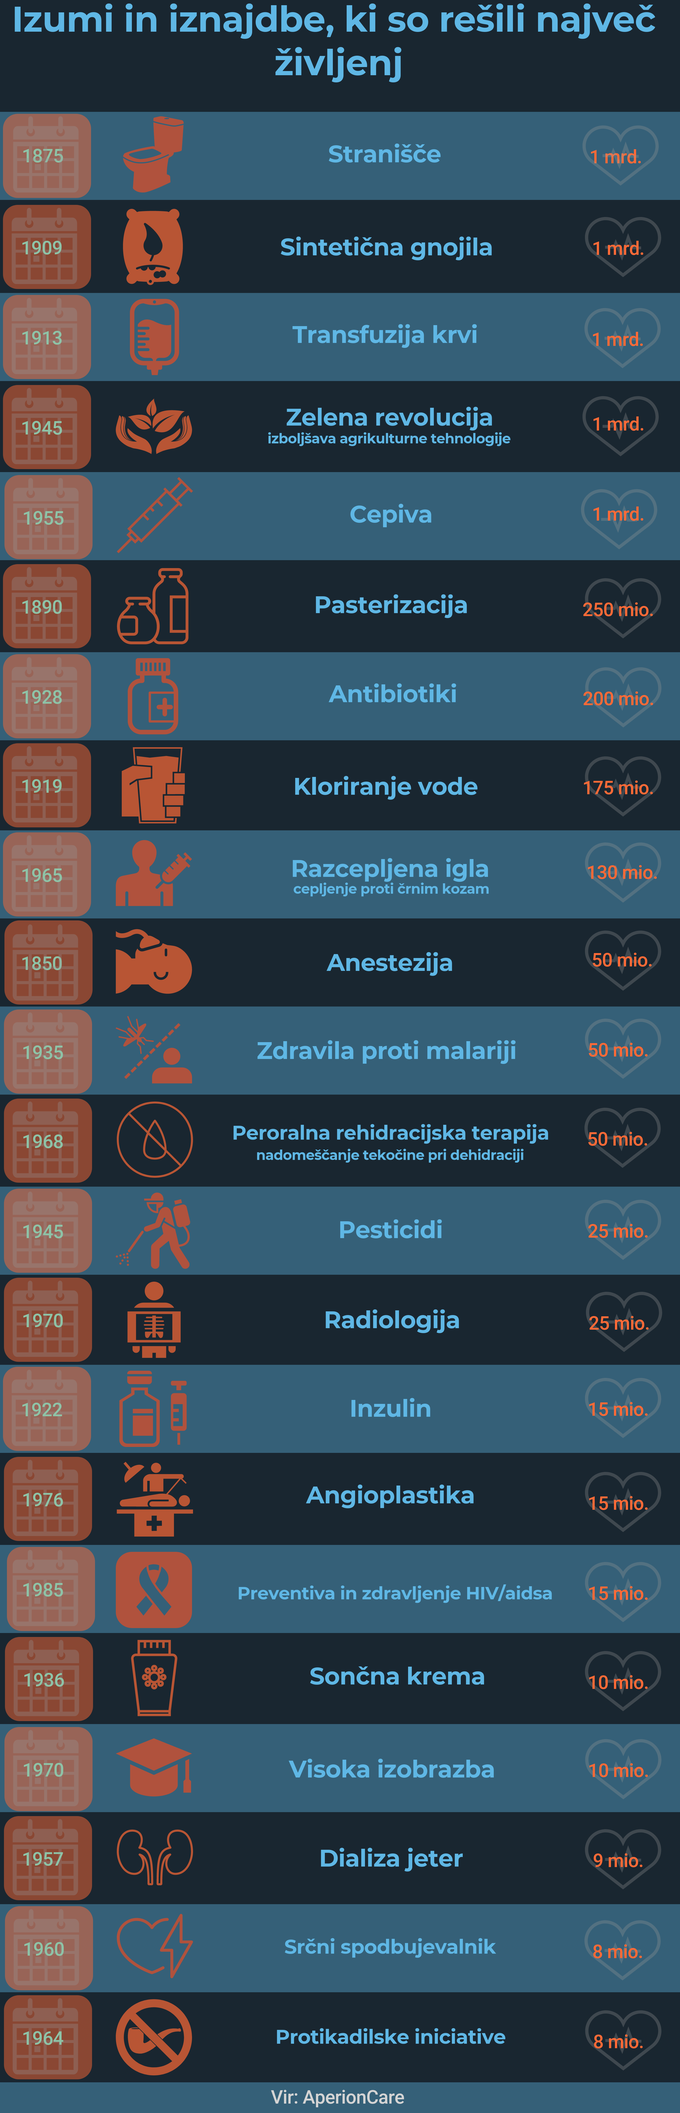 Izumi, ki so resili najvec zivljenj | Foto: Infografika: Marjan Žlogar